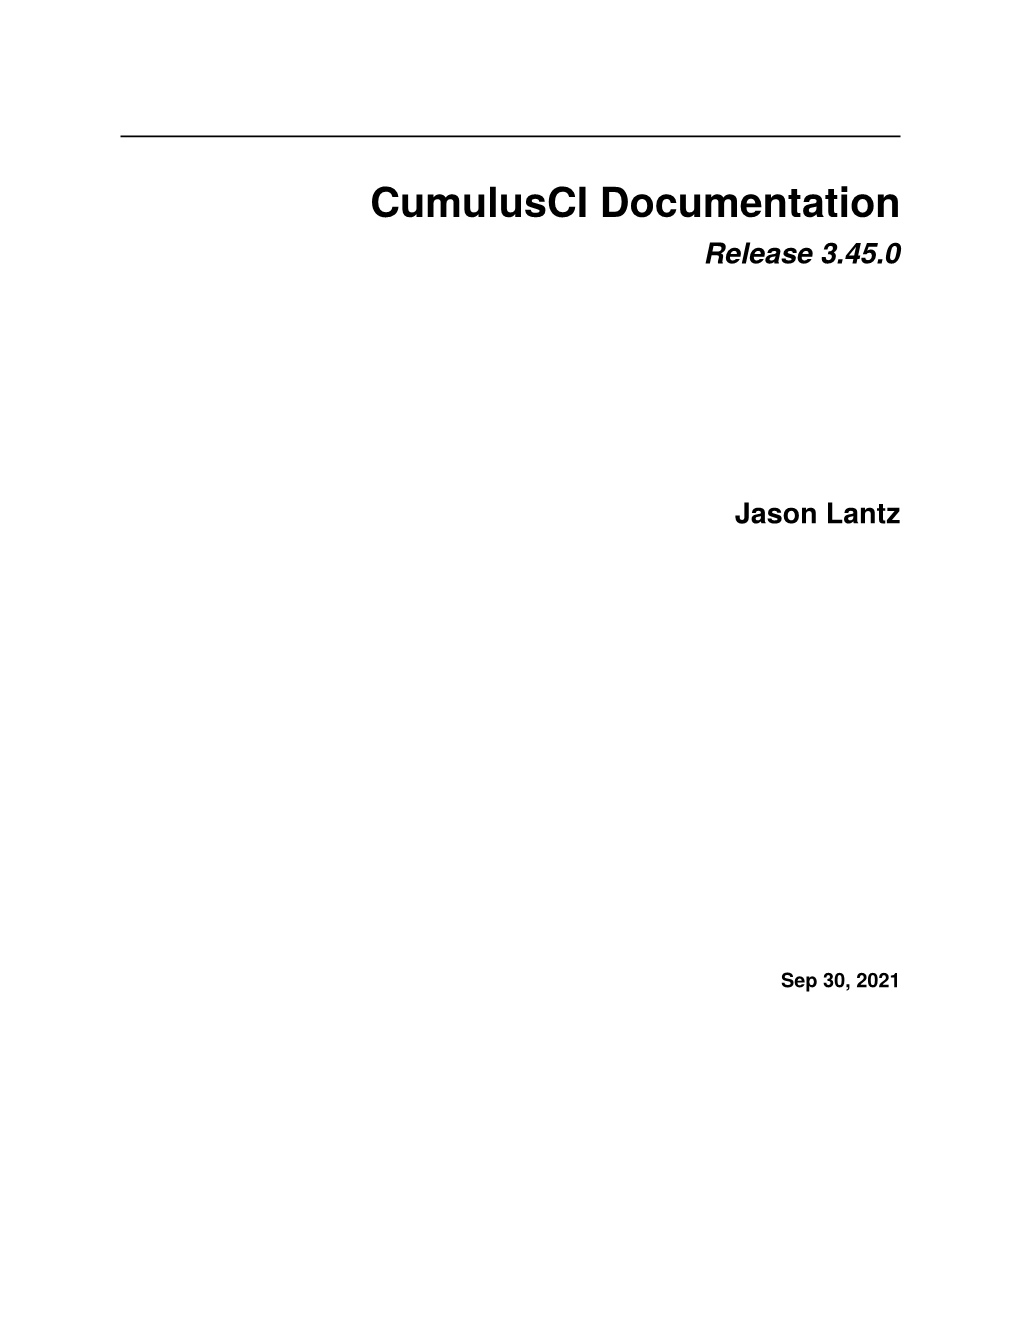 Cumulusci Documentation Release 3.45.0